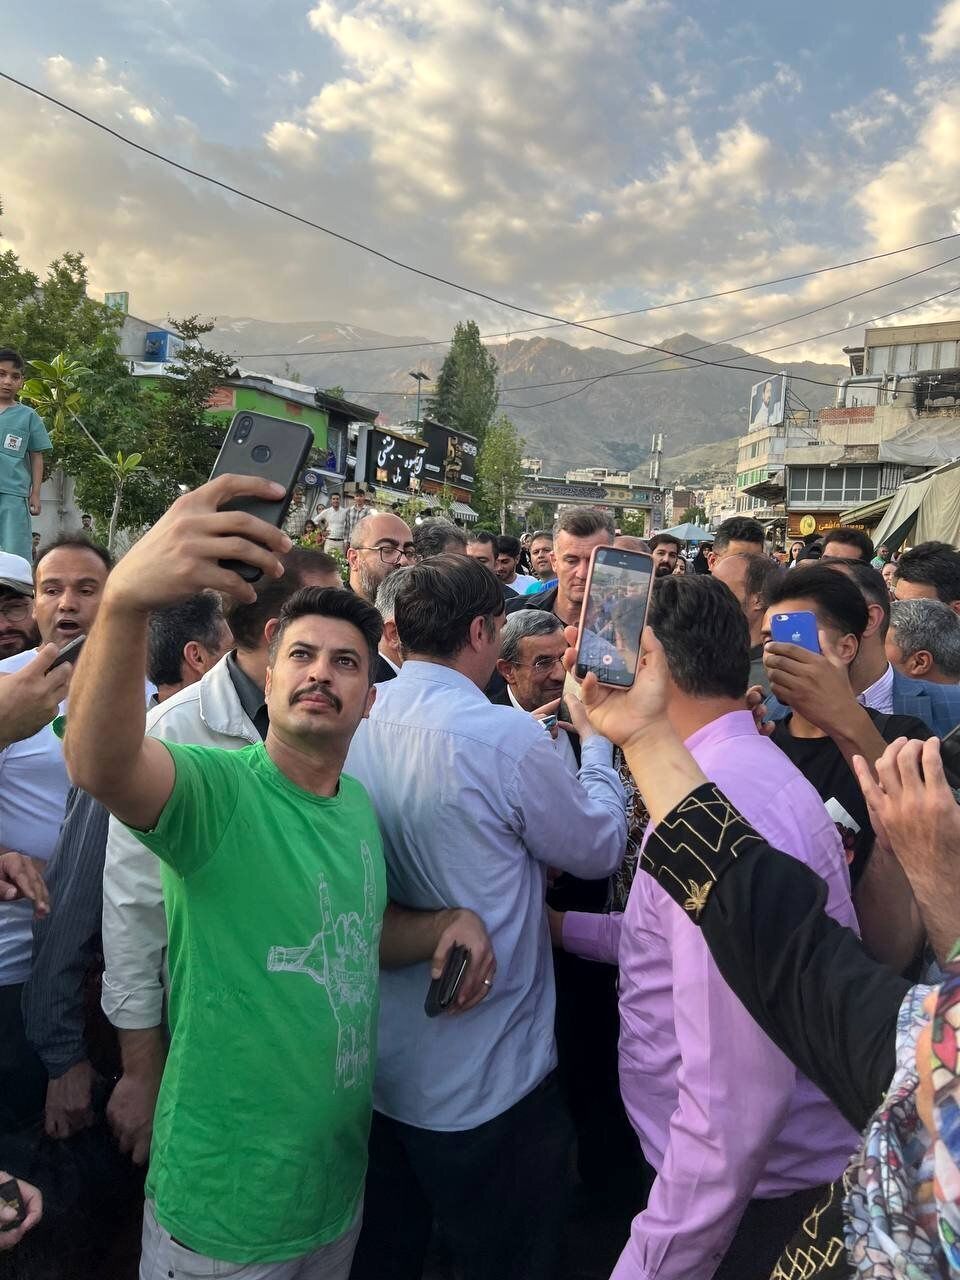 (تصاویر) محمود احمدی نژاد در امامزاده صالح تجریش / بازار داغ سلفی با آقای کاندیدا